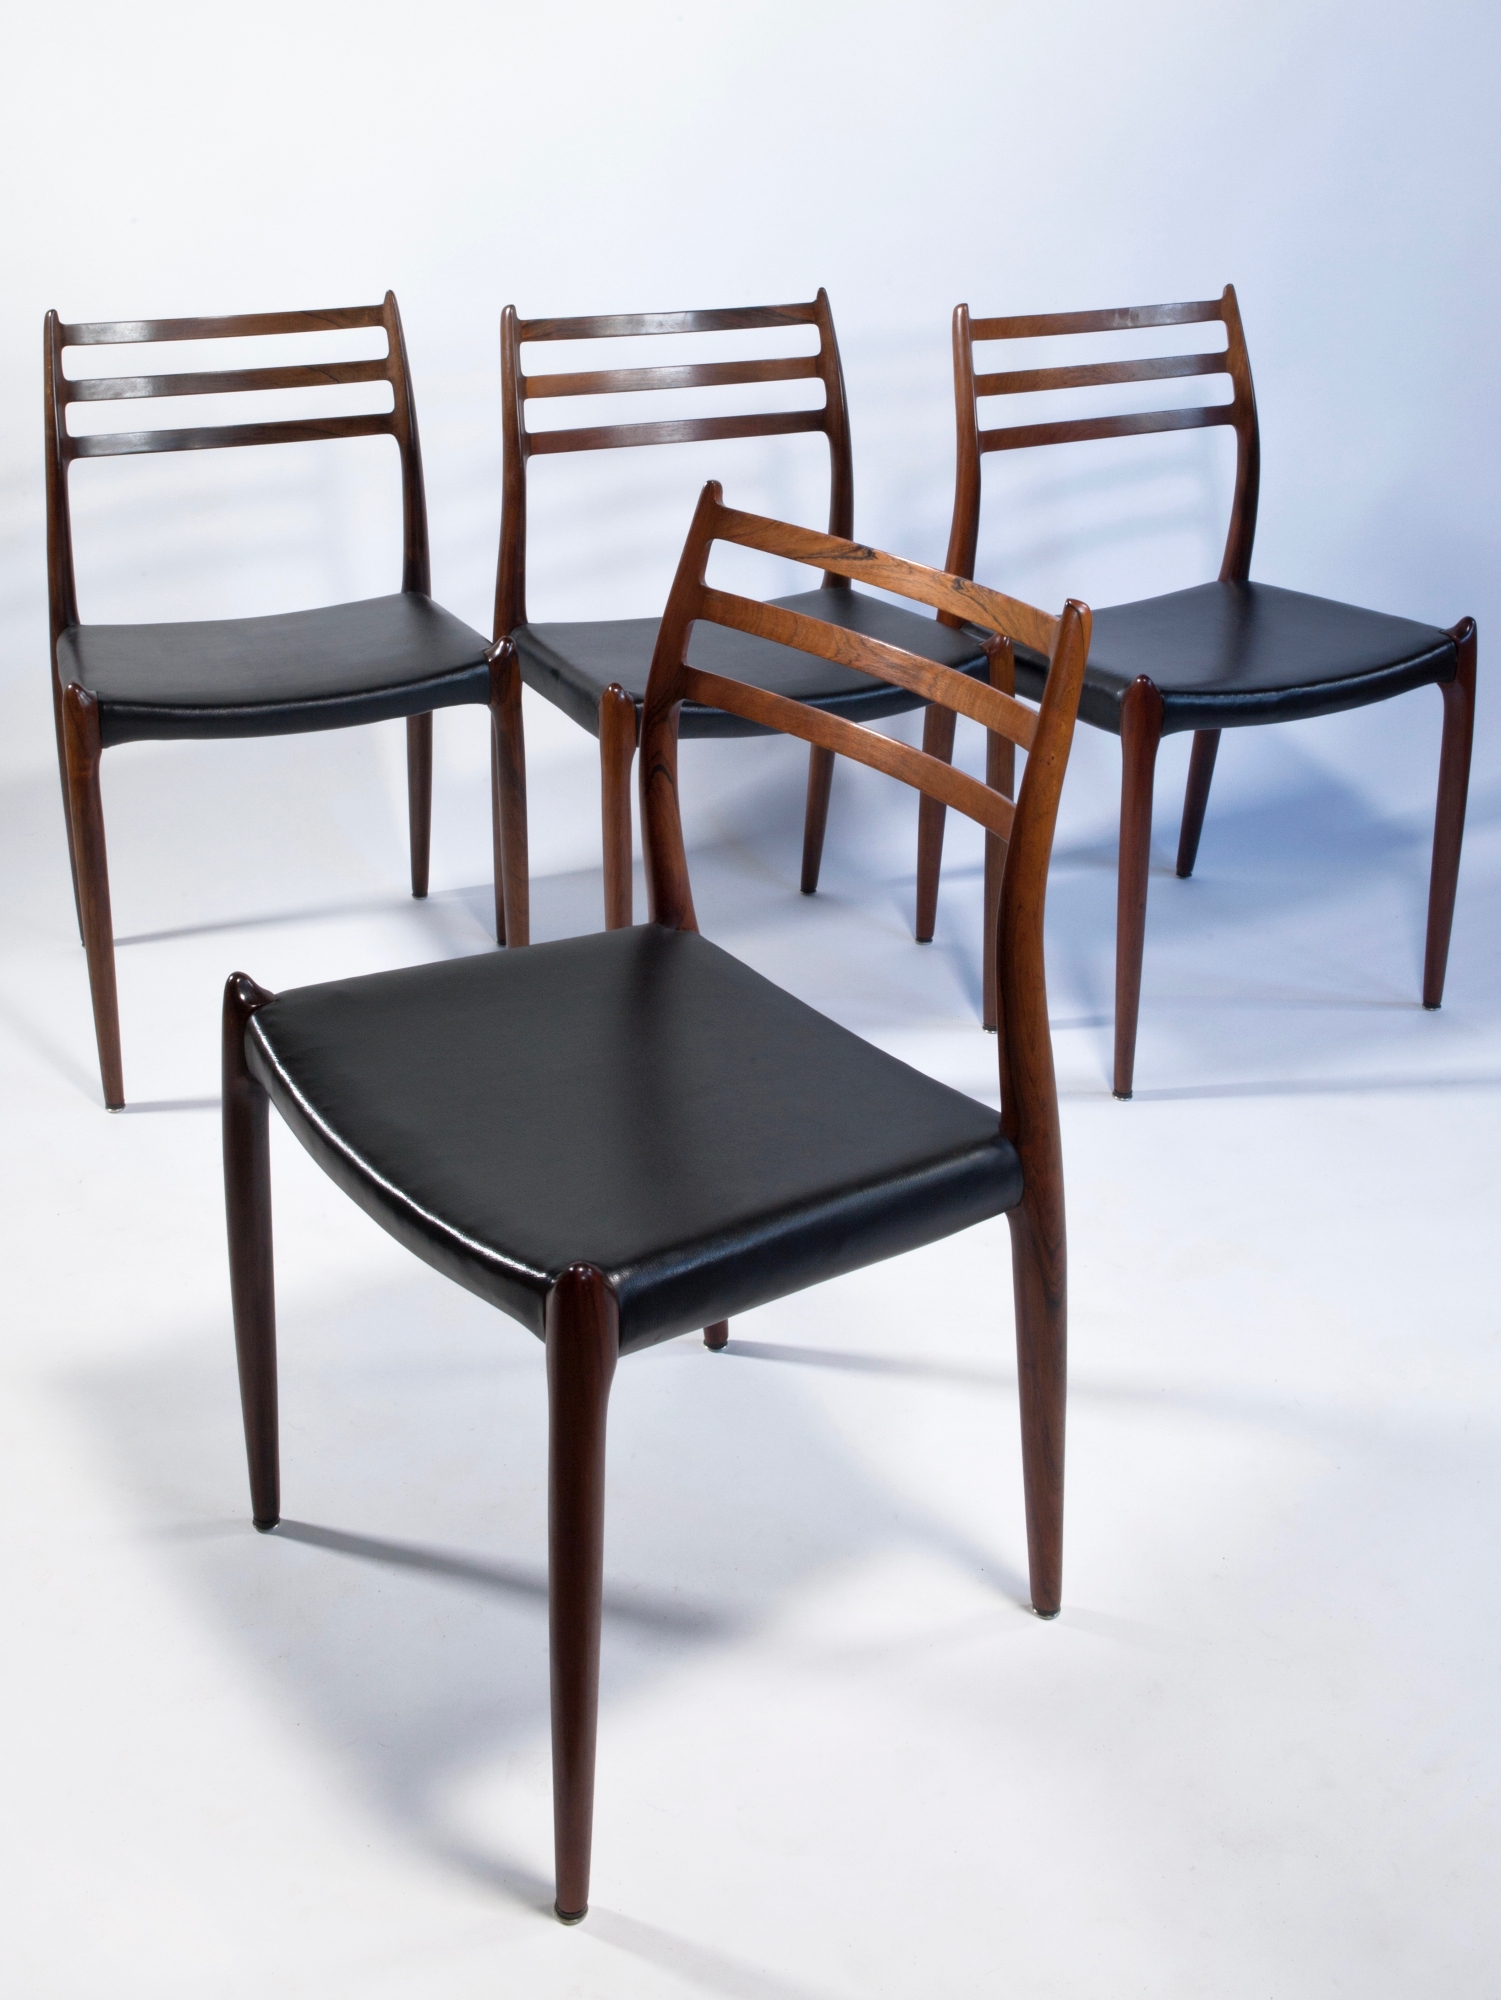 Niels Otto Møller, Vier palissander stoelen, uitgevoerd door J.L. Møllers Møbelfabrik, jaren '60 - Niels Møller | Kunstconsult